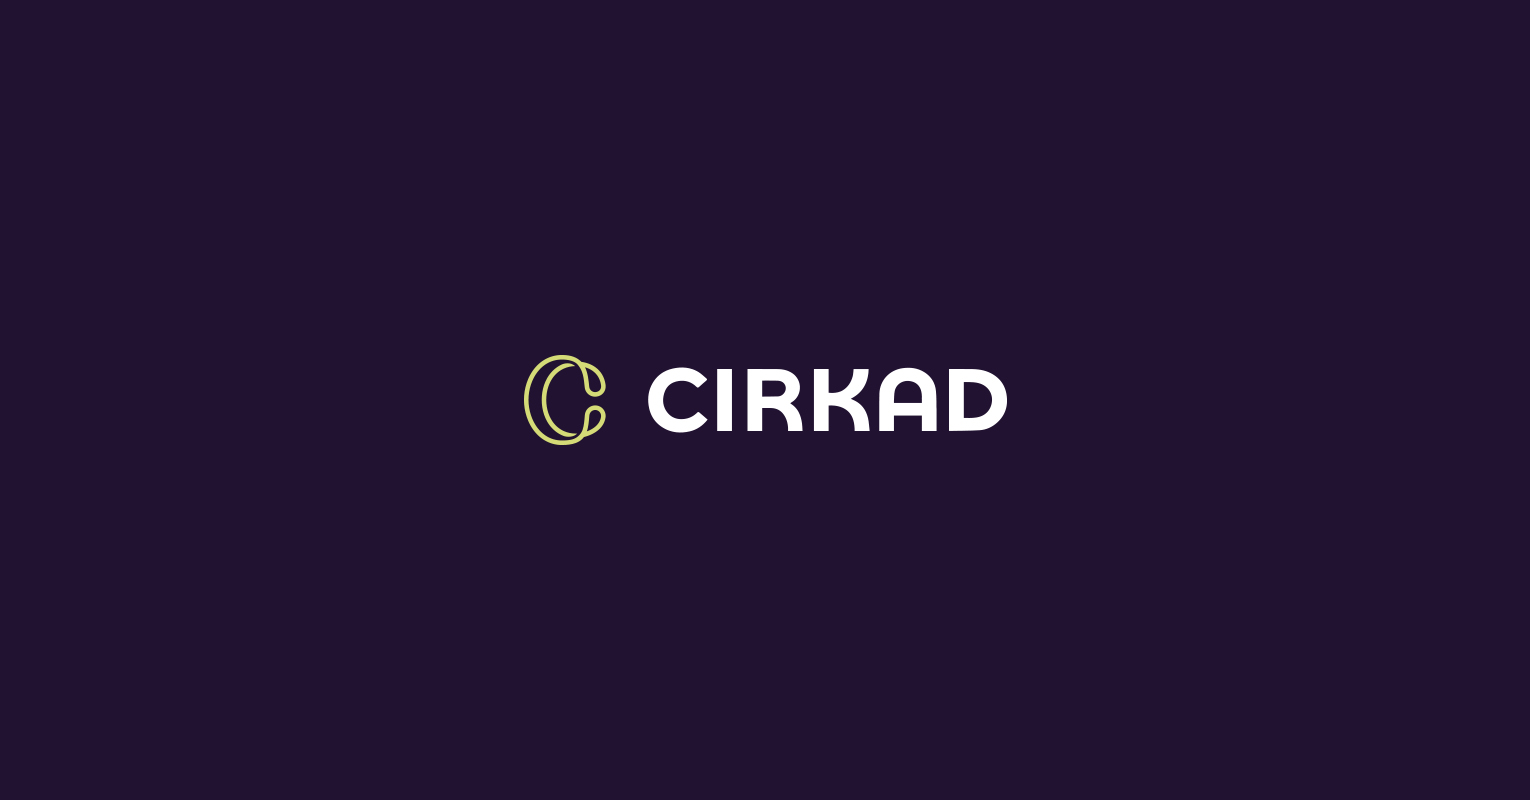 Les supports de communications réalisés pour Cirkad